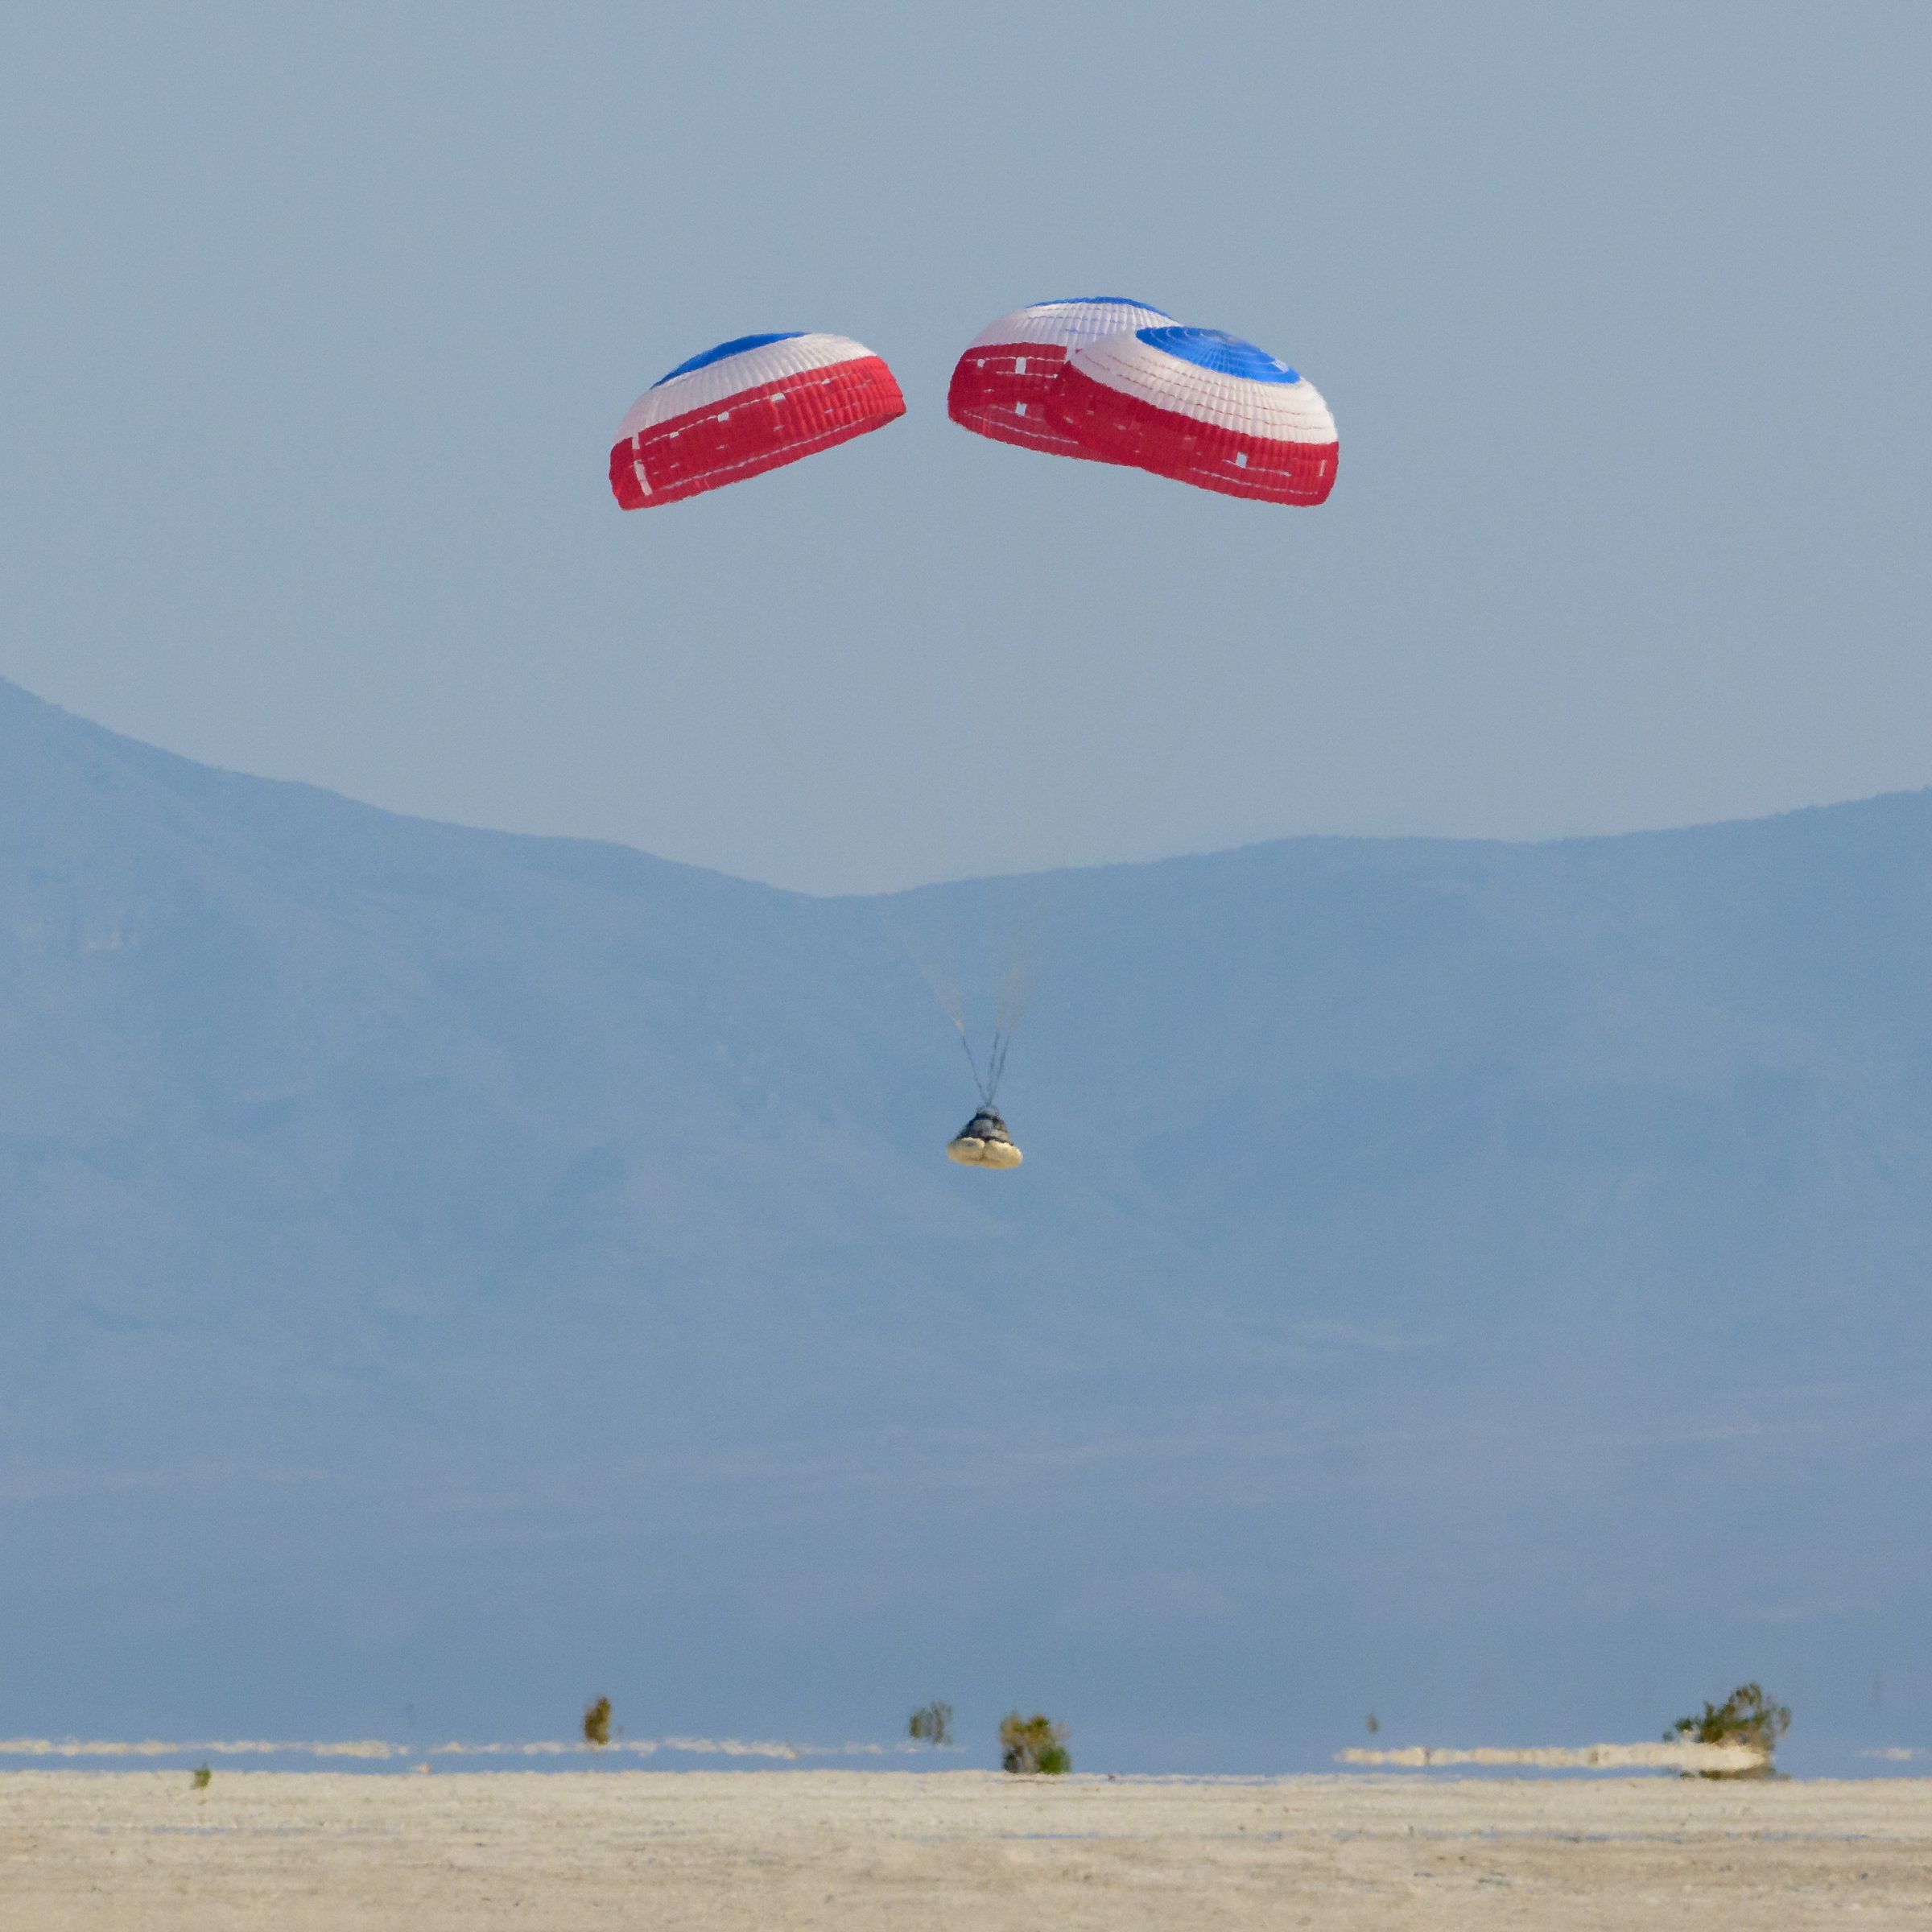 Boeing’s Starliner spacecraft landing under parachutes in the New Mexico desert